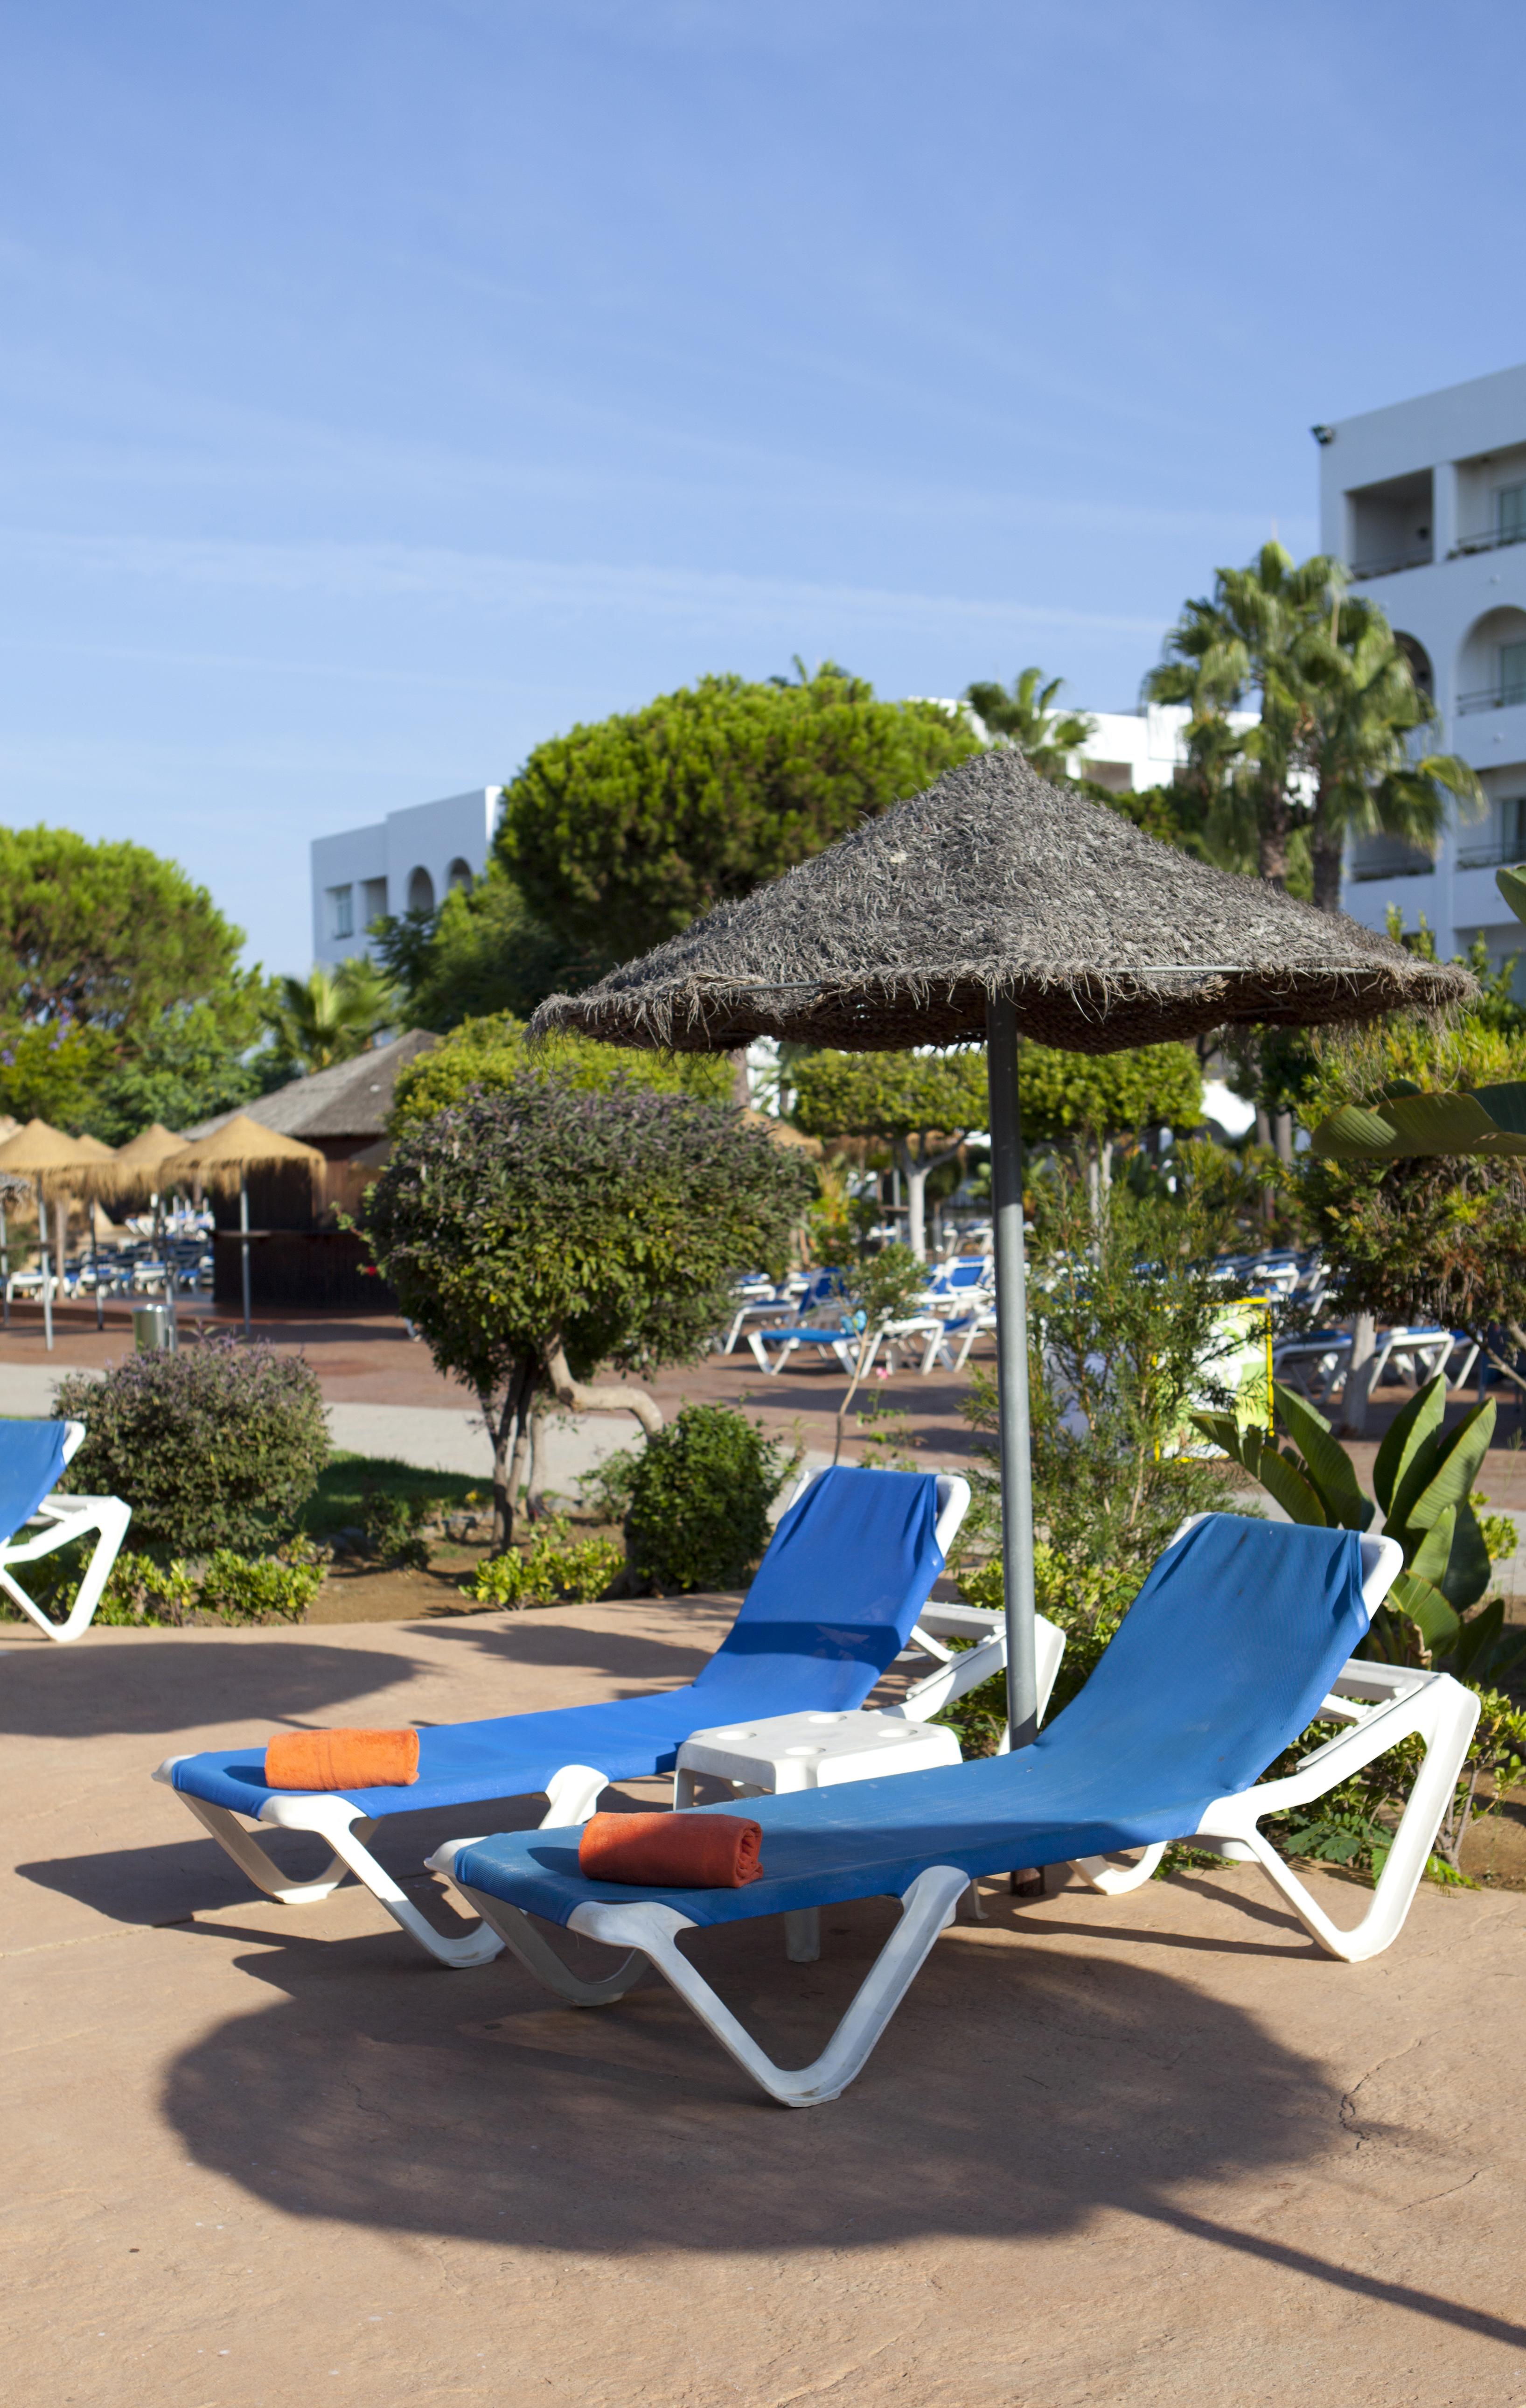 Playacartaya Ξενοδοχείο Ουέλβα Εξωτερικό φωτογραφία